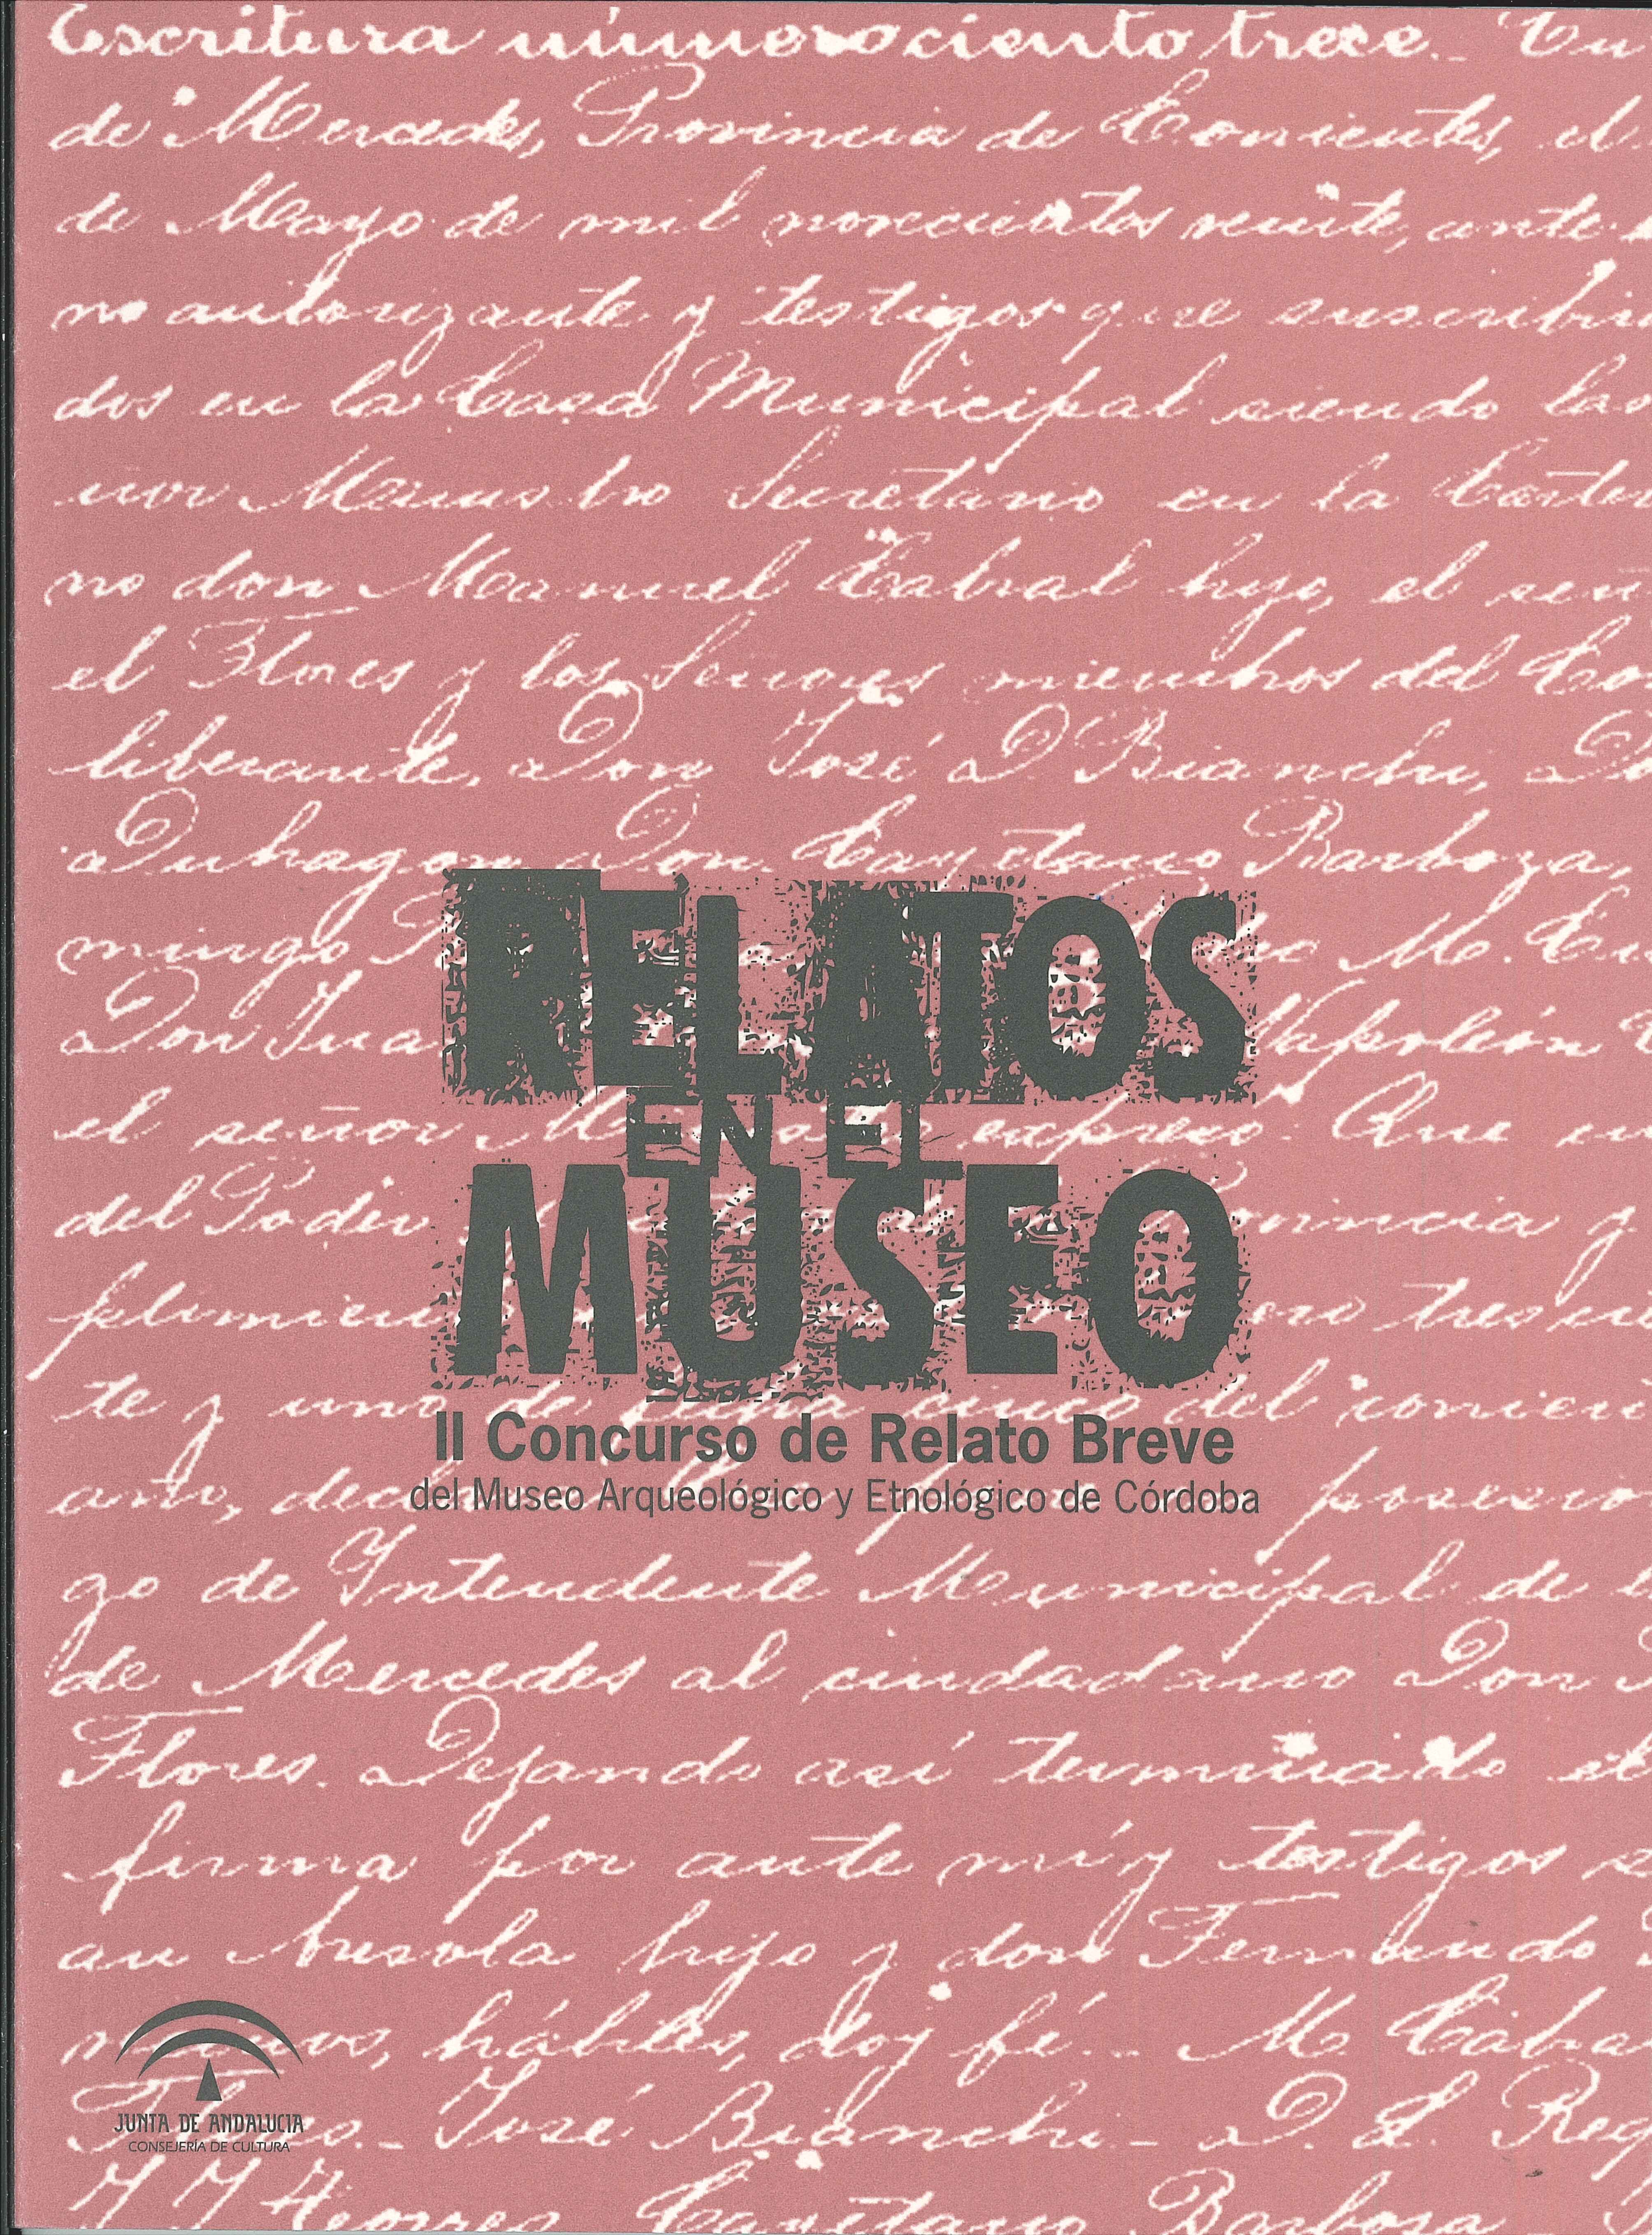 Relatos en el Museo. II Concurso de Relato Breve del Museo Arqueológico y Etnológico de Córdoba